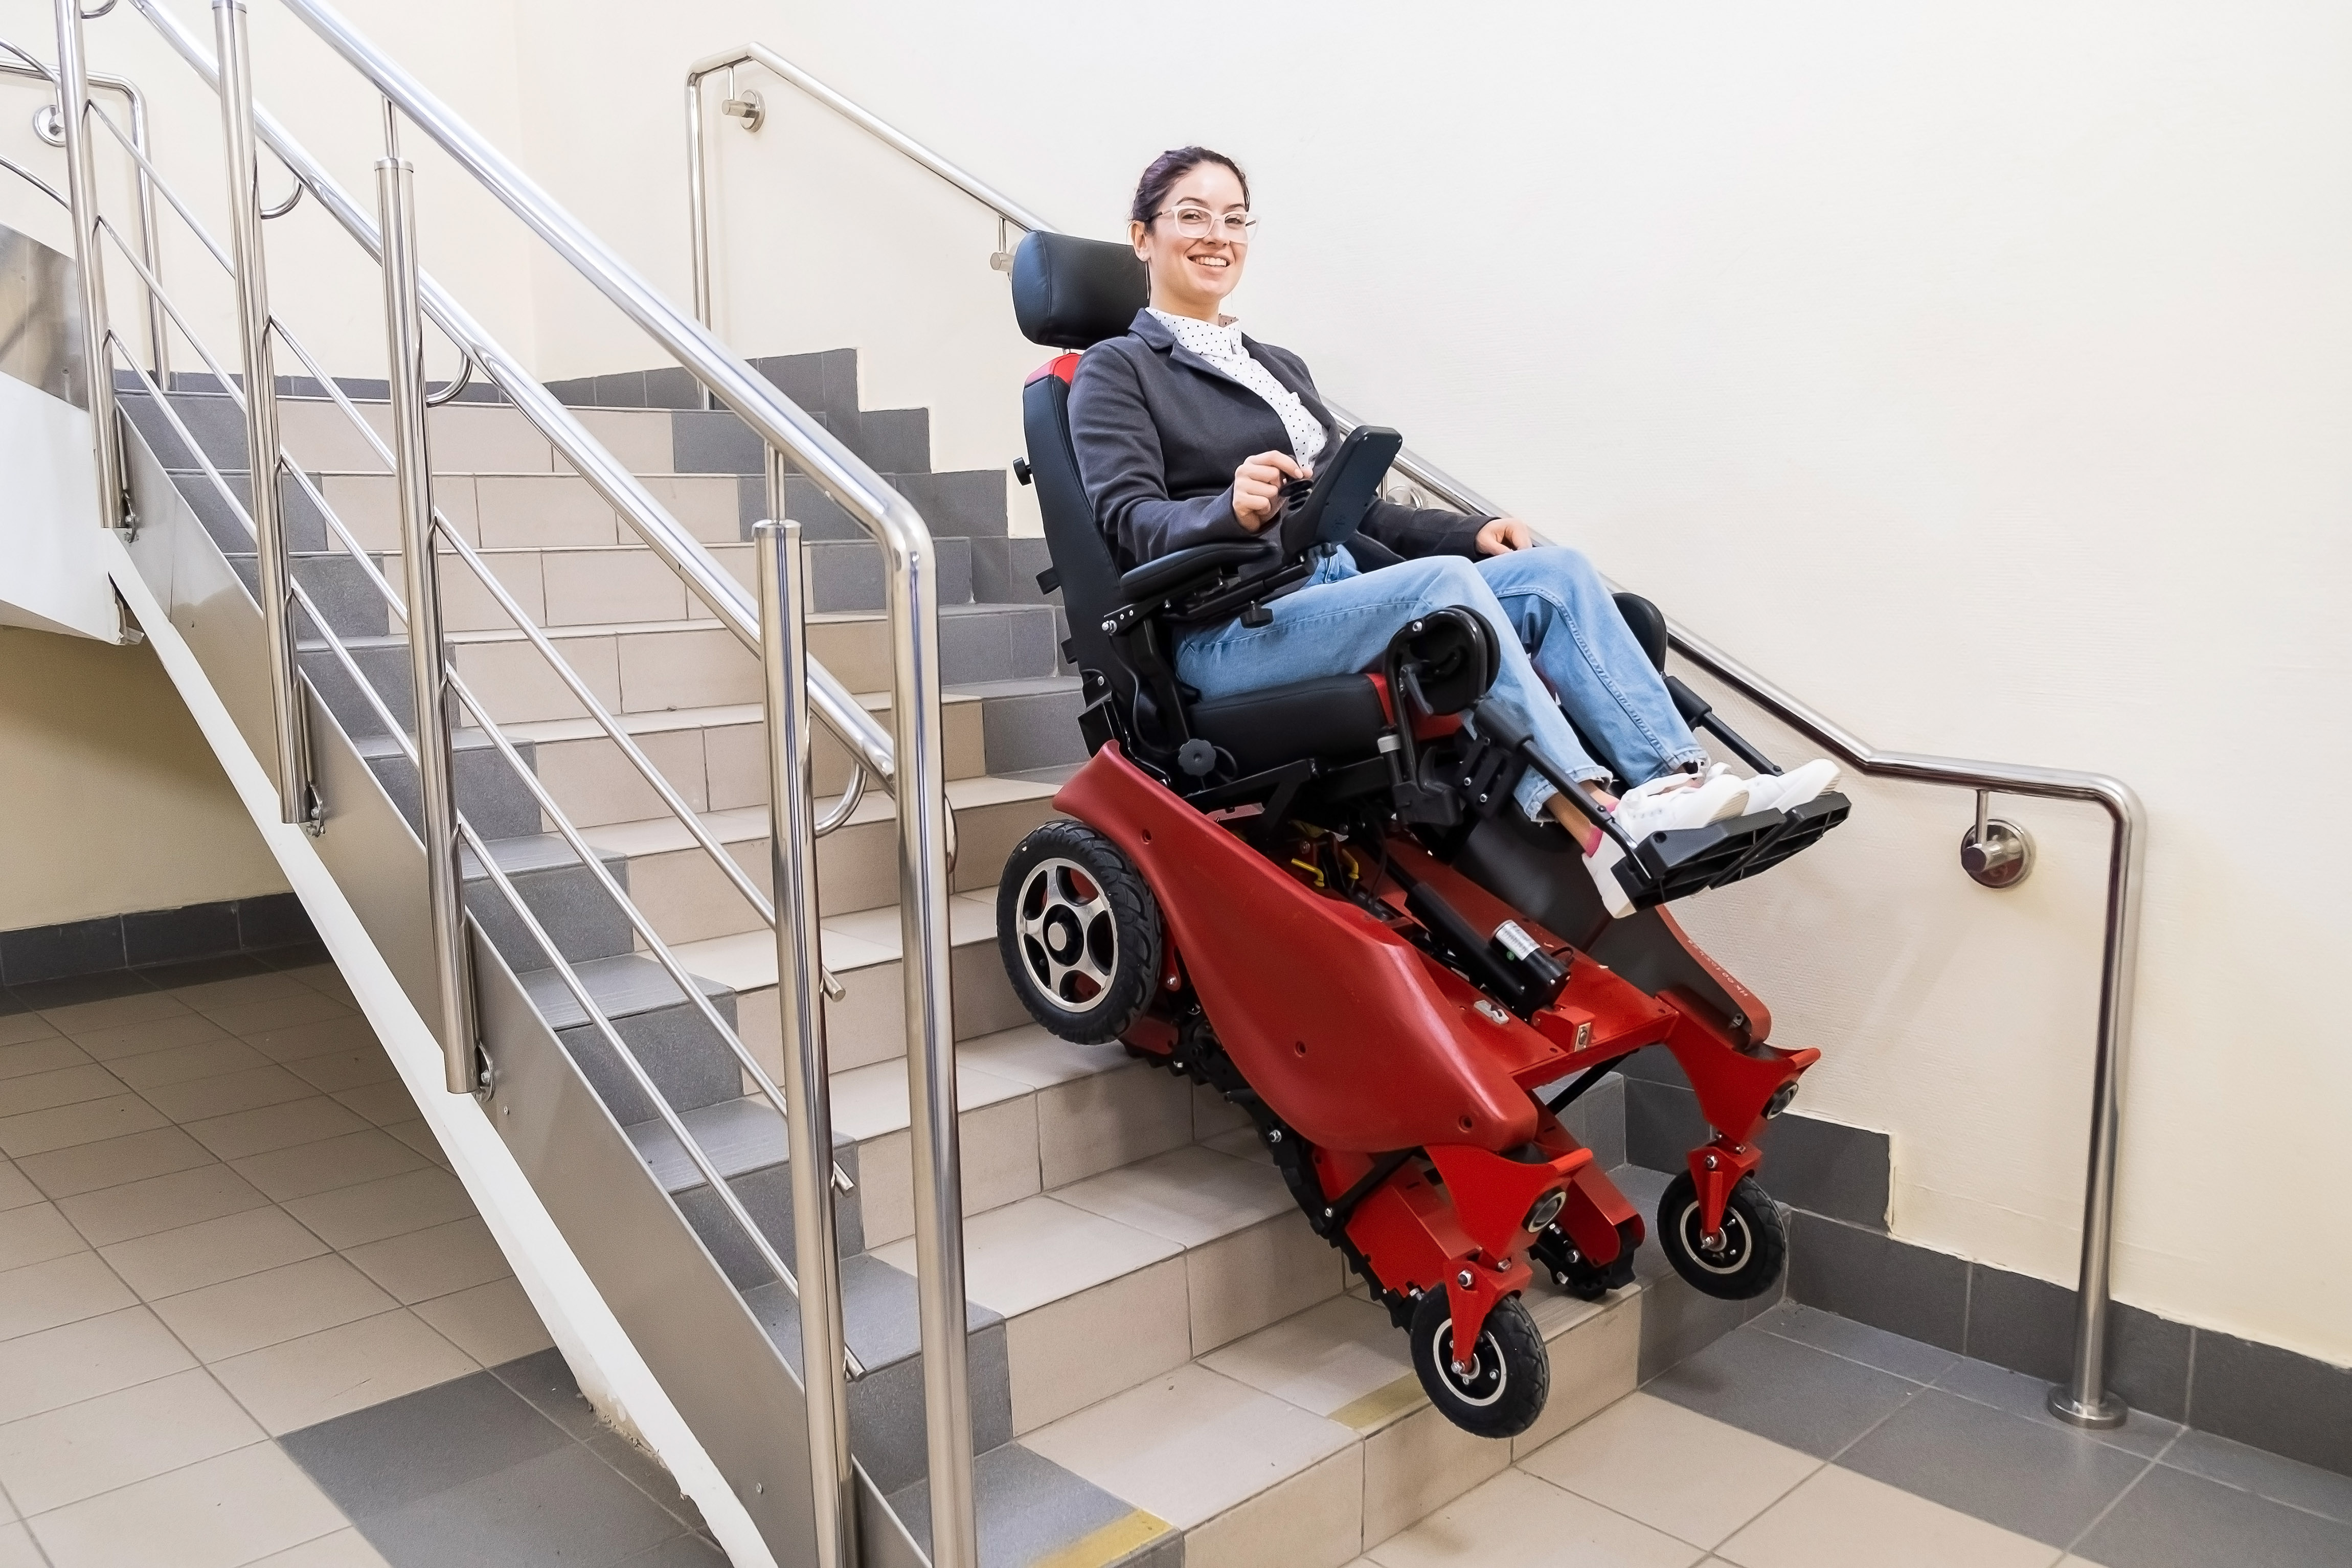 Treppensteiger Rollstuhl ☀️ Treppenlift Alternative ab 1.000€